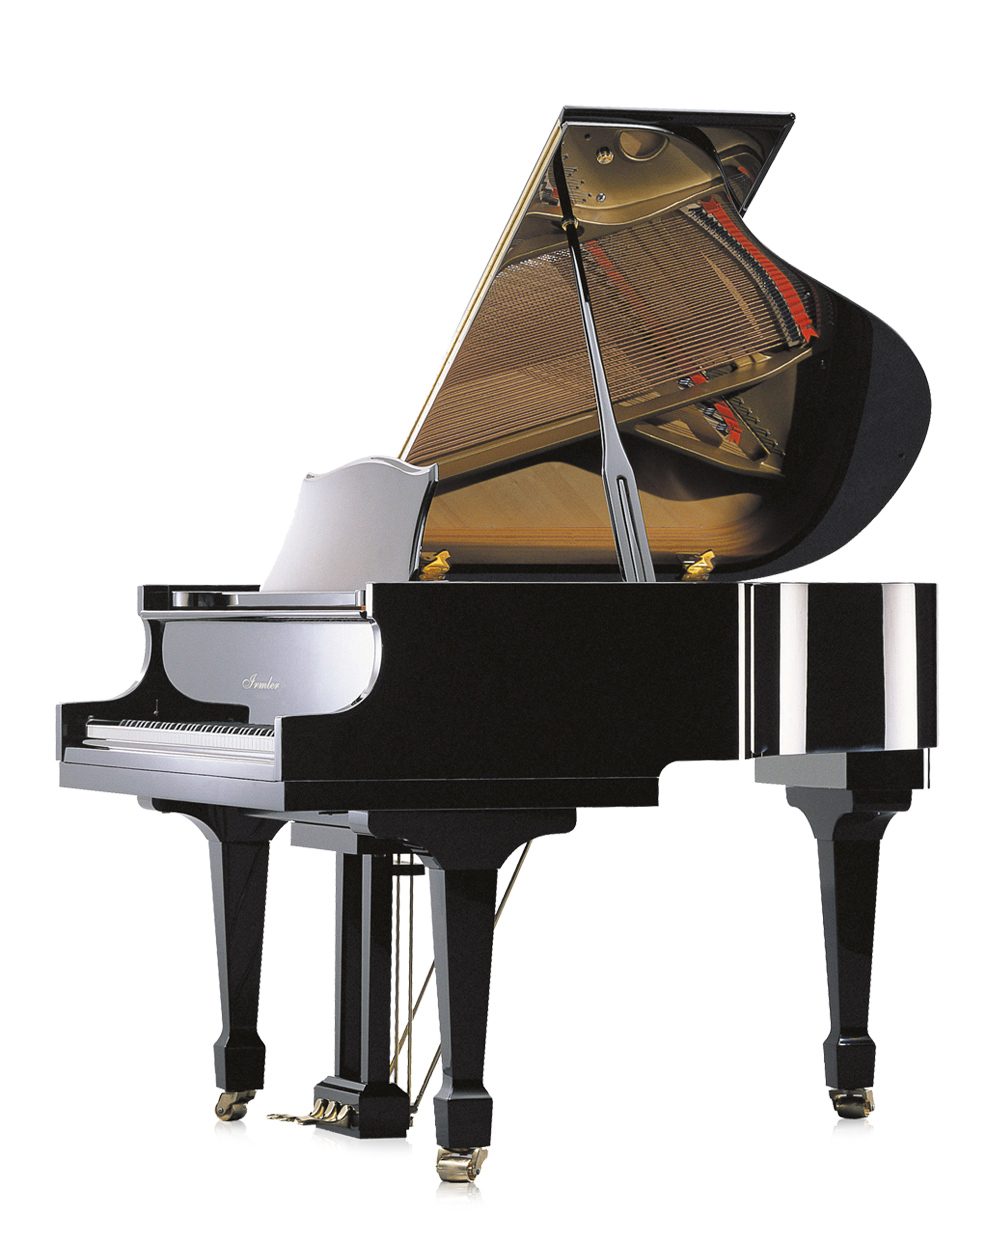 Irmler F160 Grand Piano